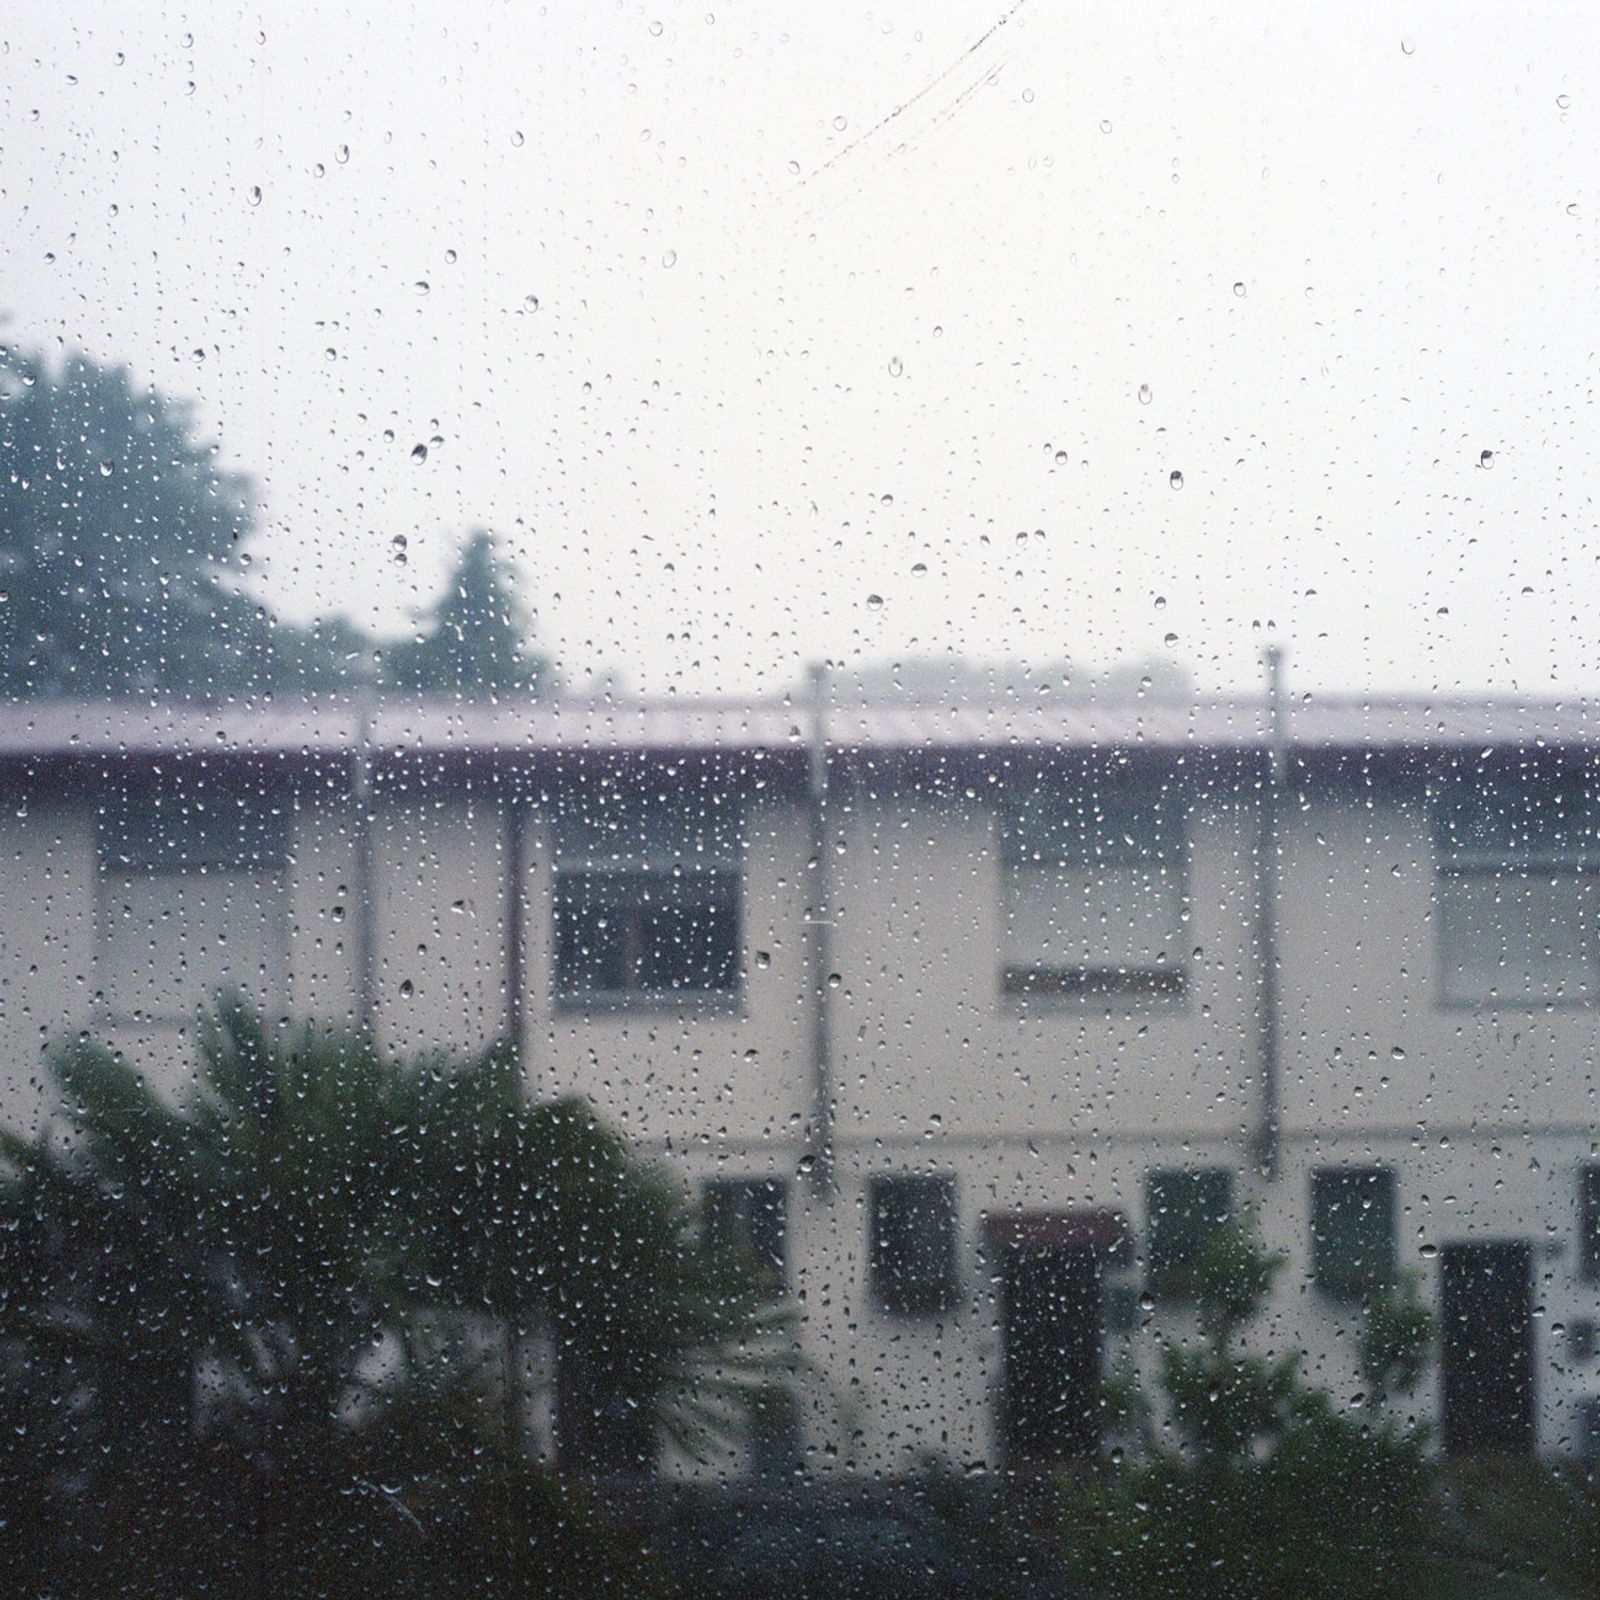 © Chiara Fossati - Rainy day at Villaggio dei Fiori